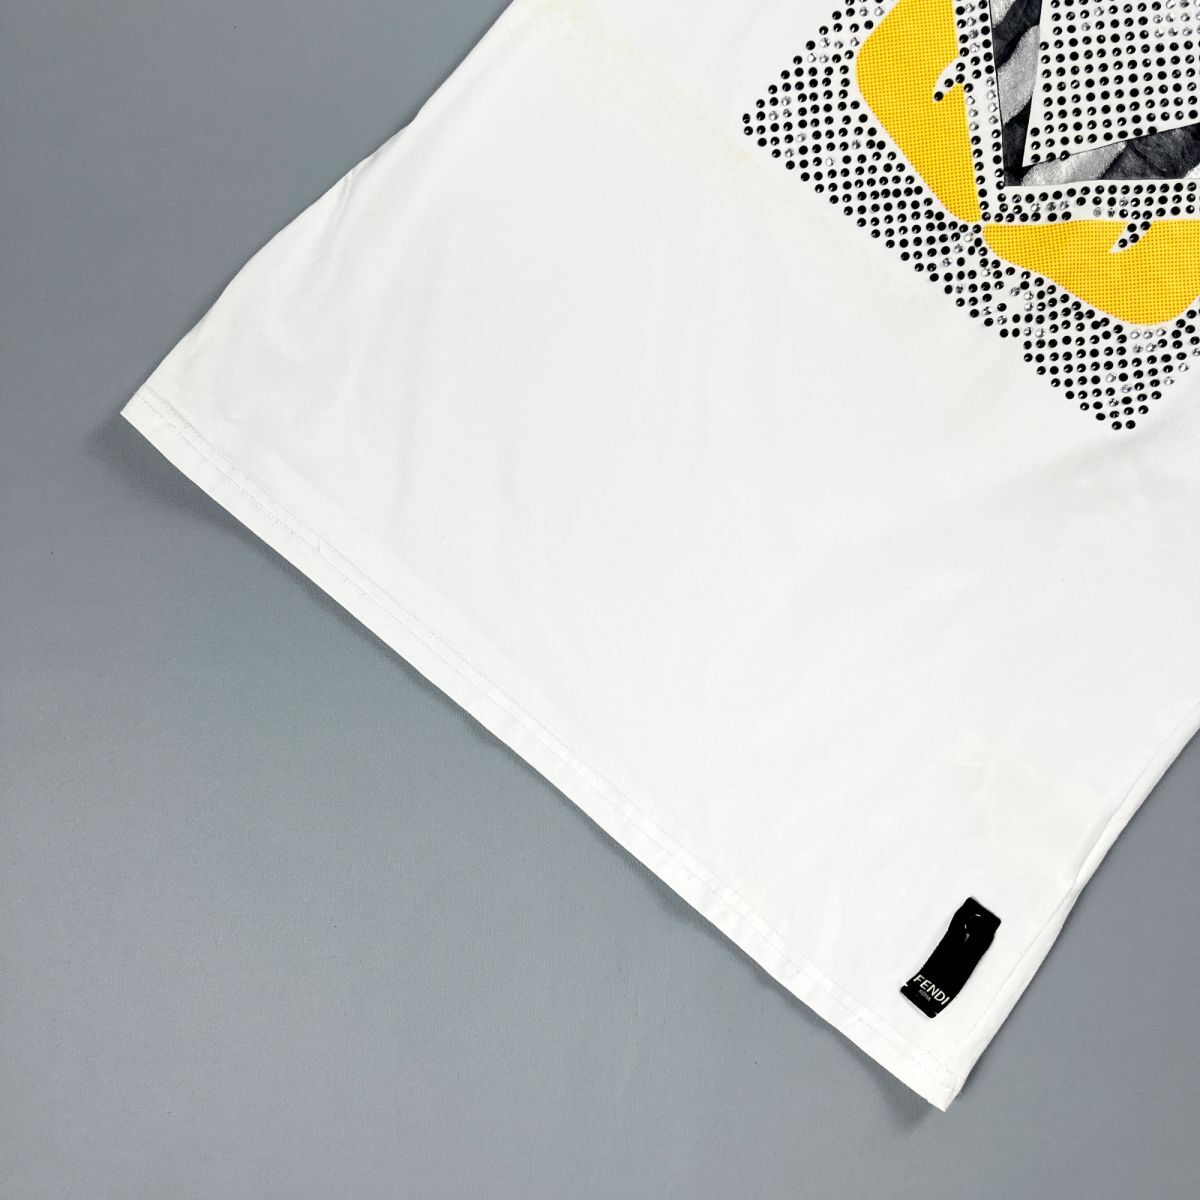 FENDI フェンディ イタリア製 ラインストーン デザインTシャツ 半袖カットソー トップス メンズ 白 ホワイト サイズM*NC332_画像3